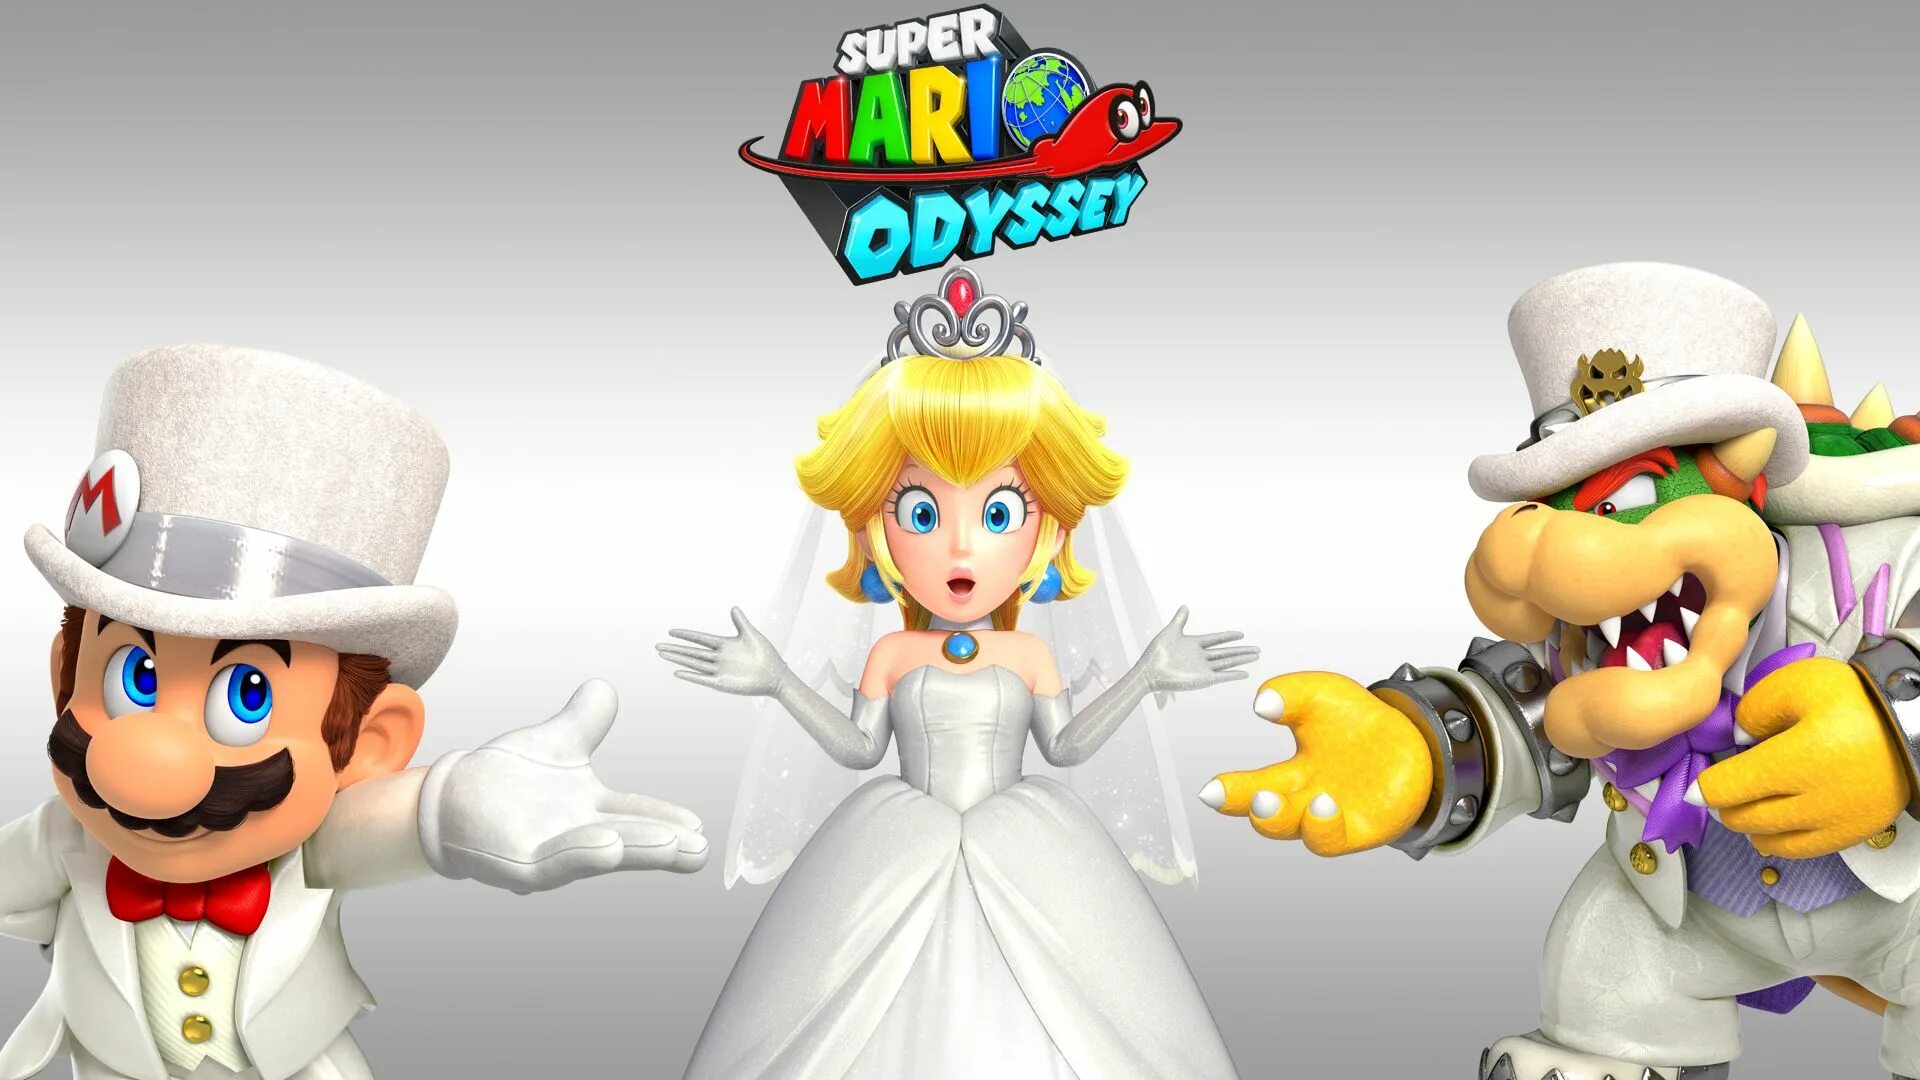 Марио одиссей играть. Супер Марио Одиссей принцесса. Боузер из супер Марио Одиссея. Super Mario Odyssey игра. Герои Марио Одиссей.